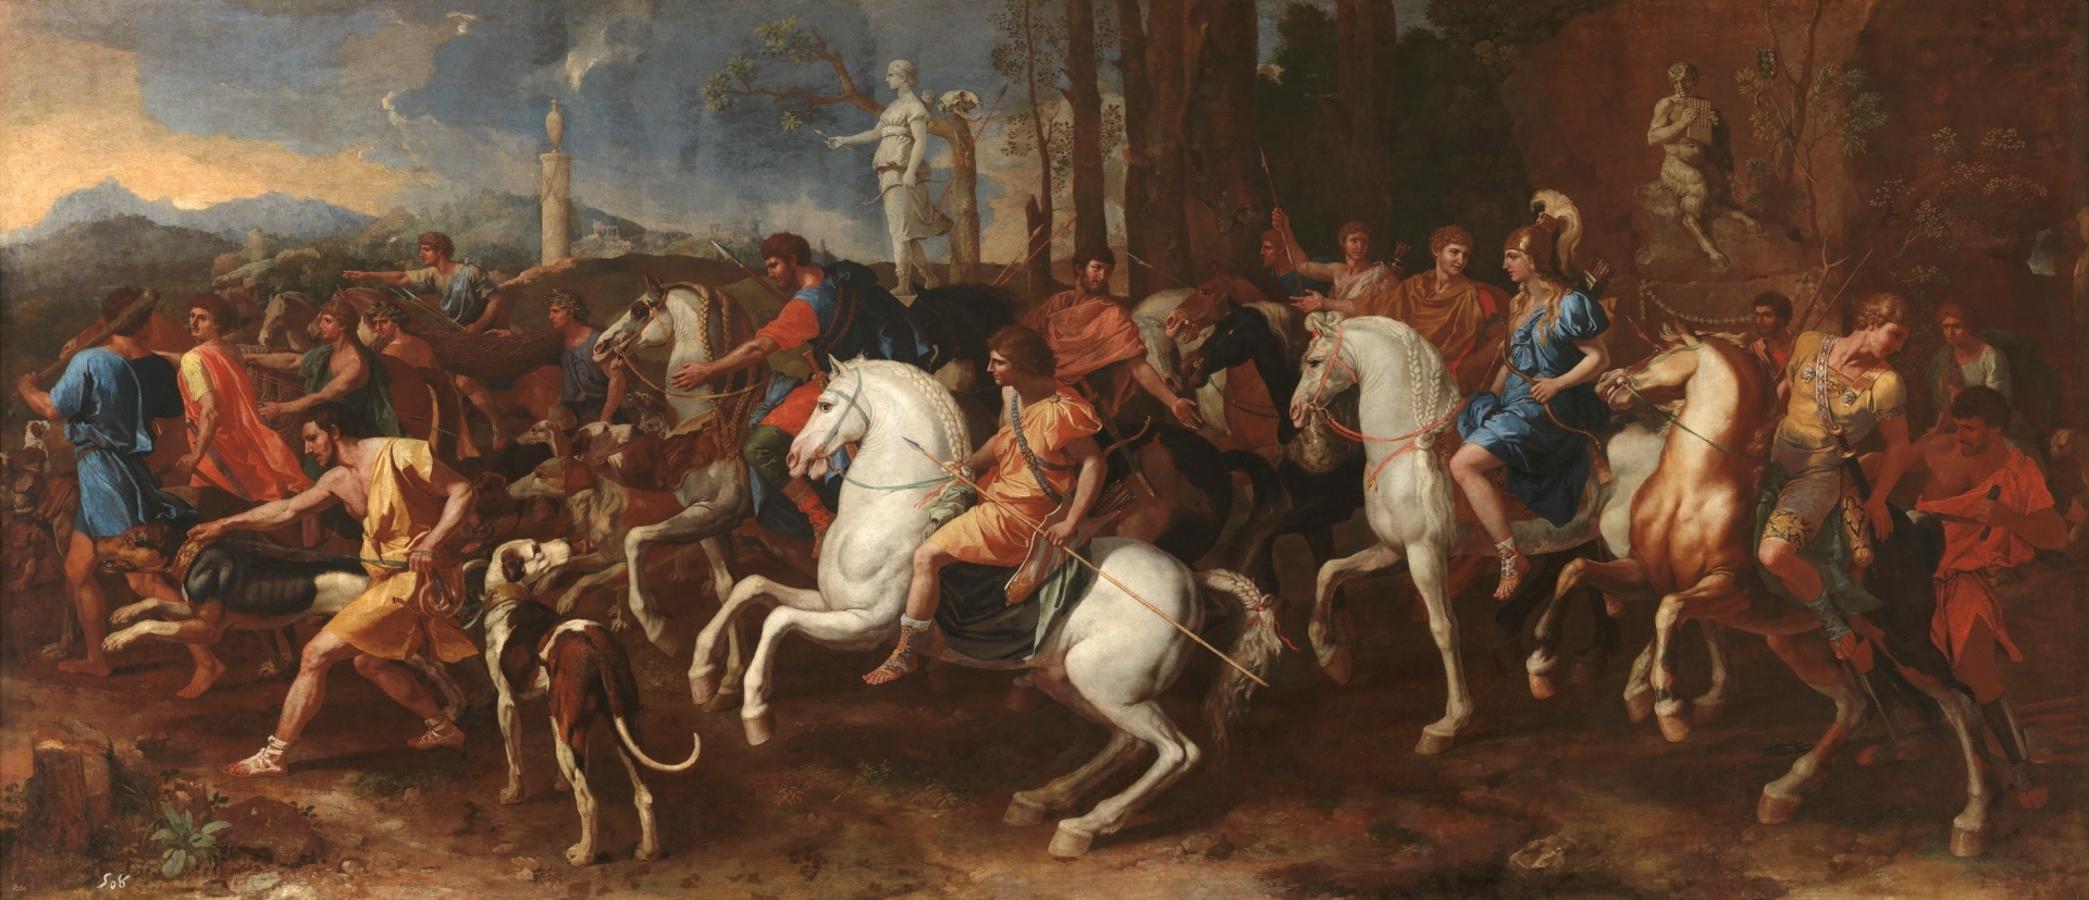 'La caza de Meleagro', de Nicolas Poussin. Óleo sobre lienzo, 160 x 360 cm. 1634-39Madrid, Museo Nacional del Prado